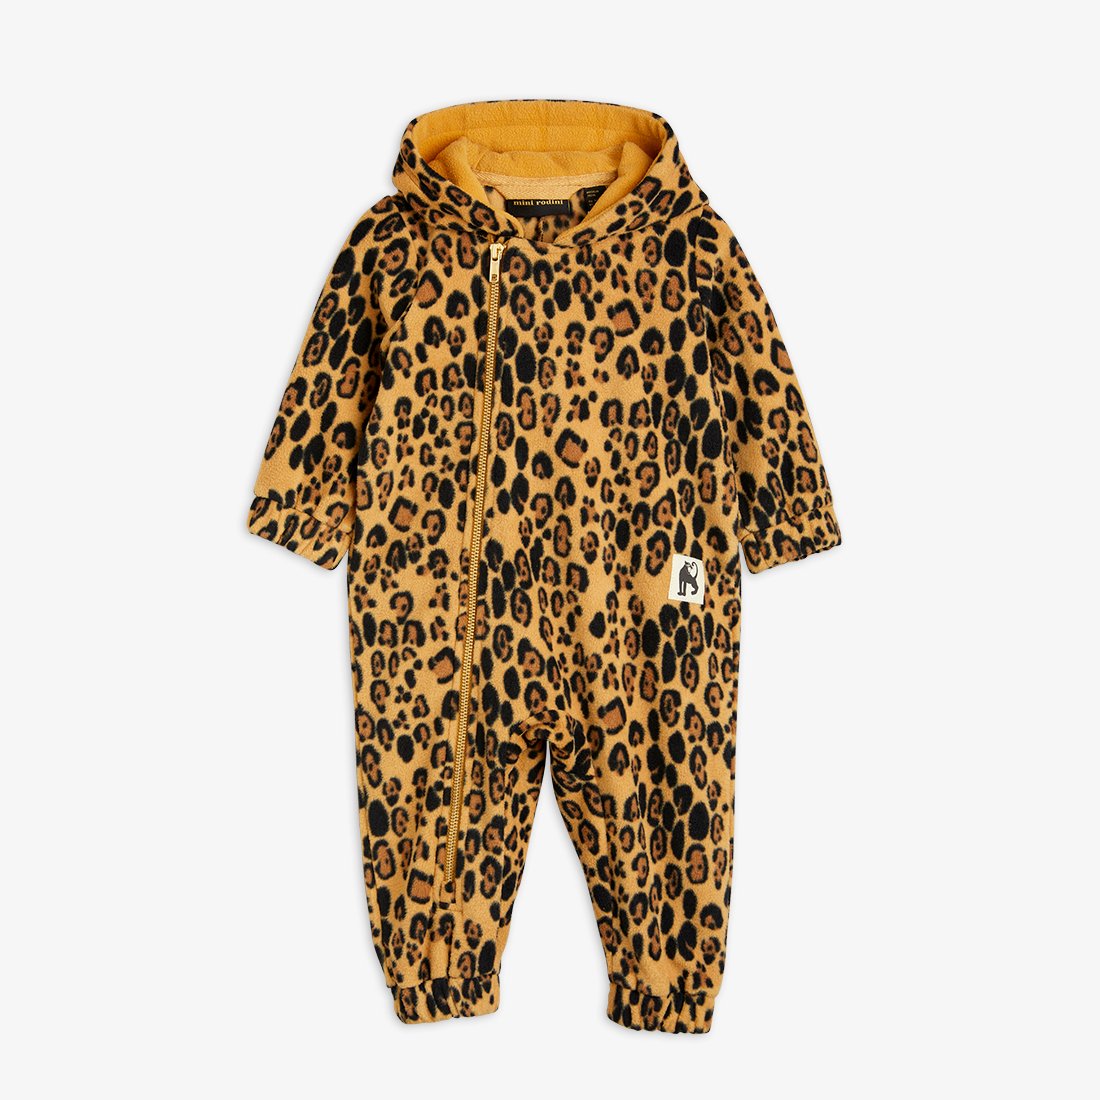 Leopard fleece onesie - Beige